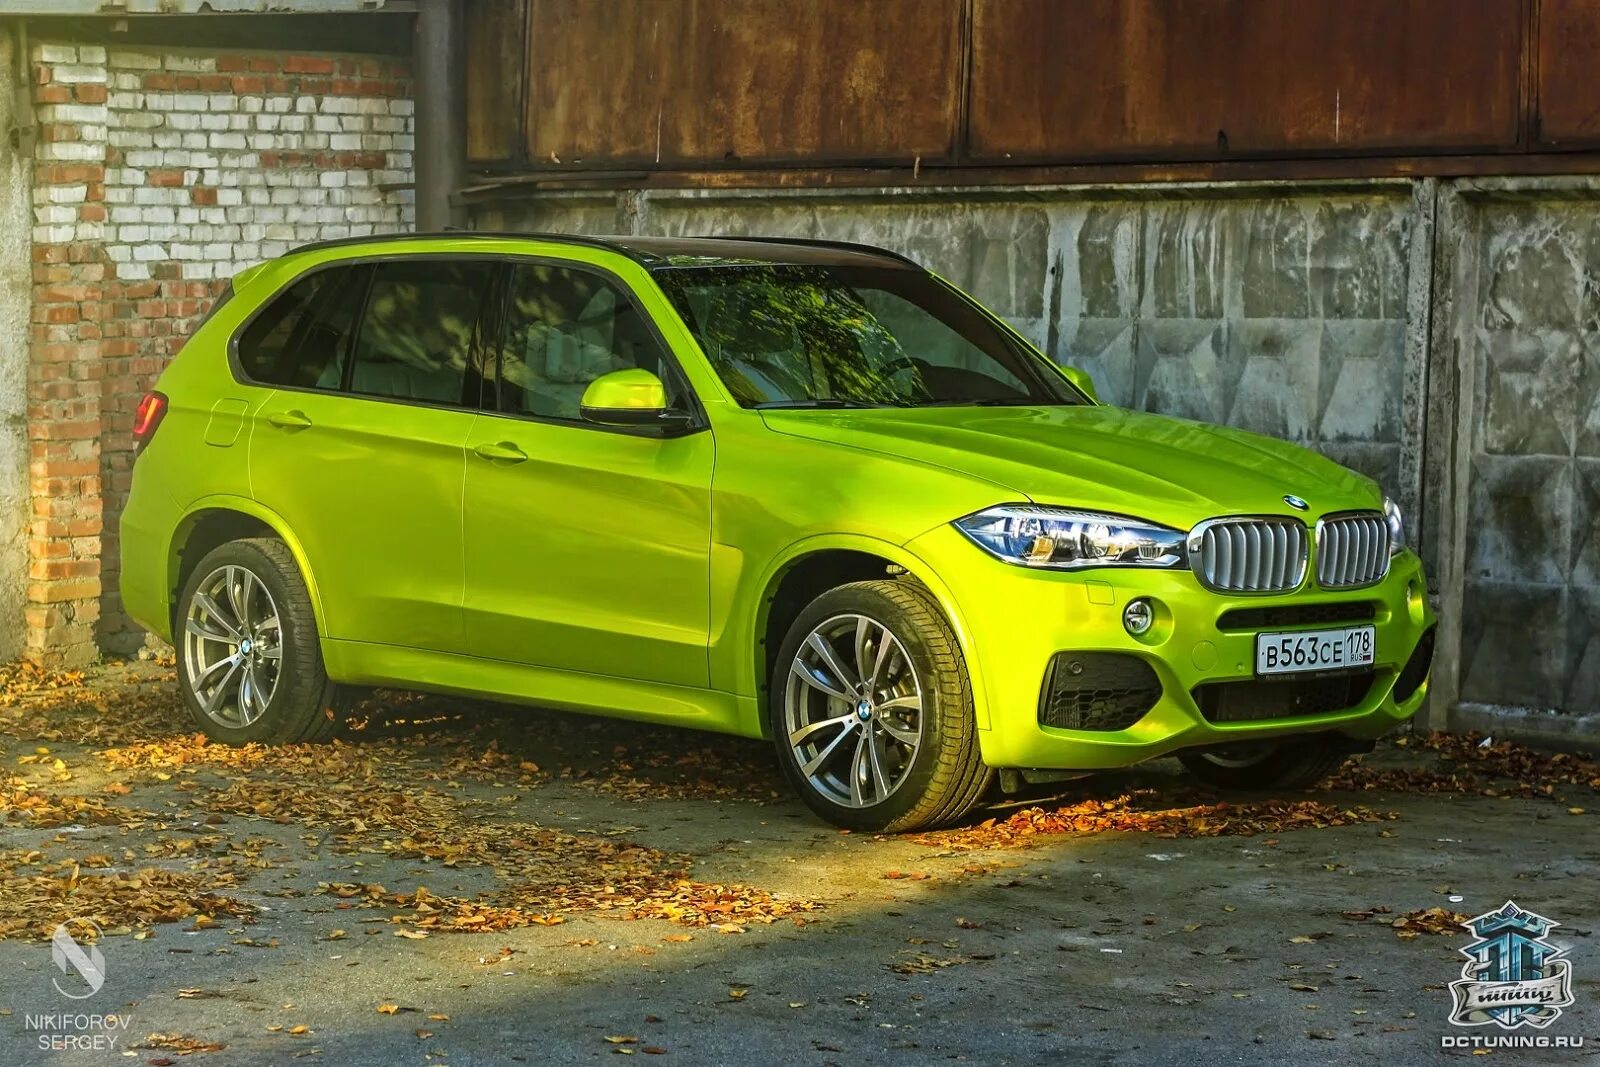 Bmw x5 цвета. Зеленая БМВ x5. БМВ x5 f15 зеленый. БМВ Икс 5 зеленая. BMW x5 g05 зеленый.